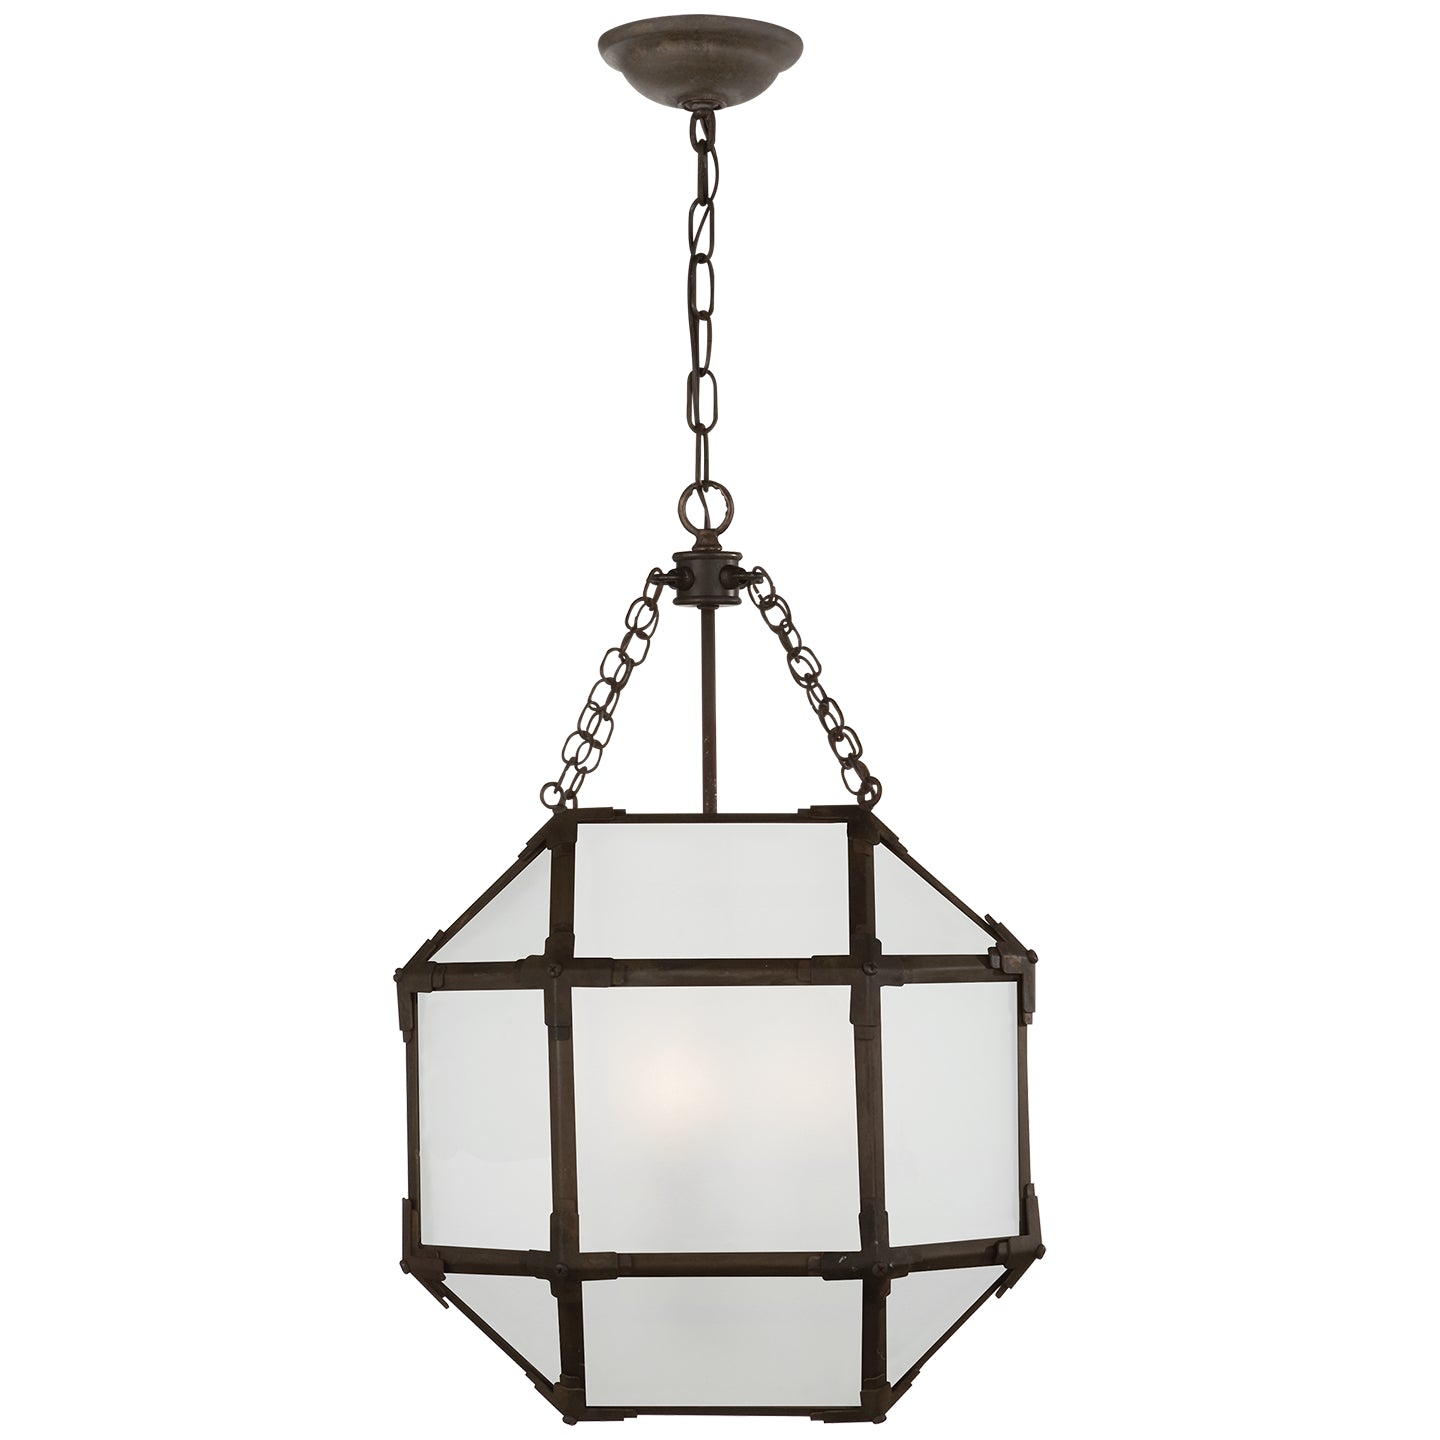 Visual Comfort Signature Canada - Three Light Lantern - Morris - Antique Zinc- Union Lighting Luminaires Decor